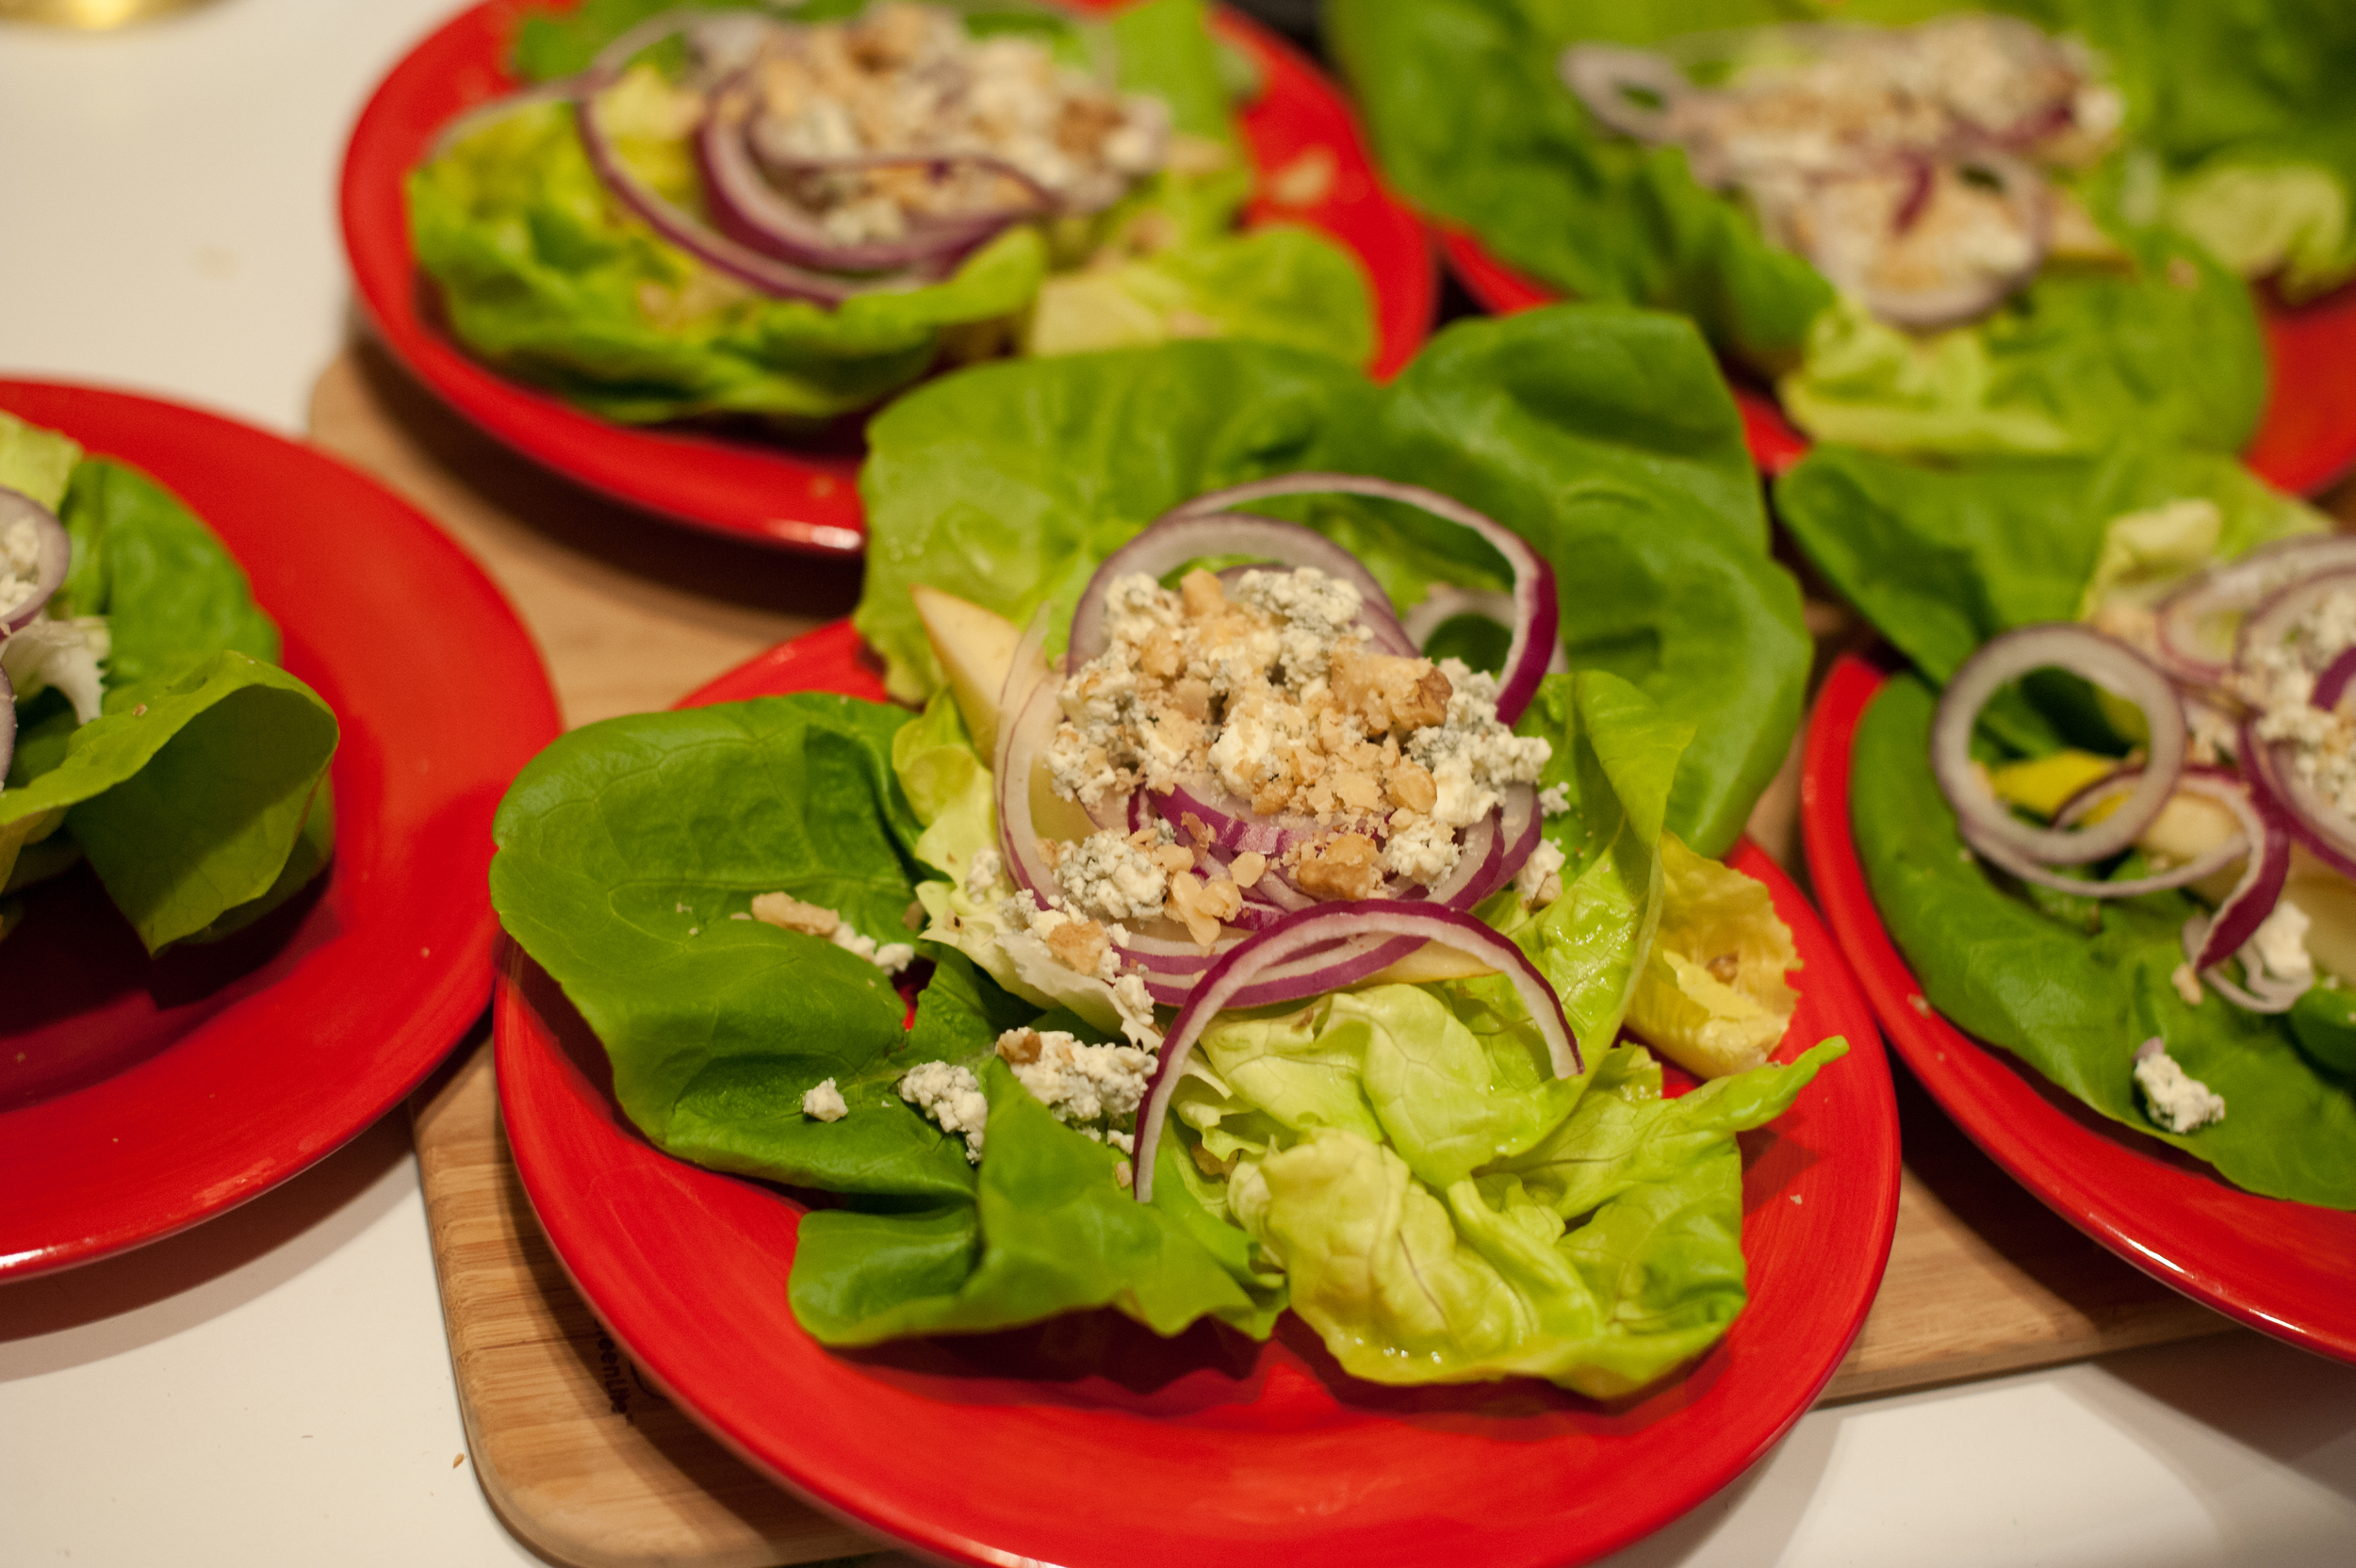 Healthy Cookshop salad